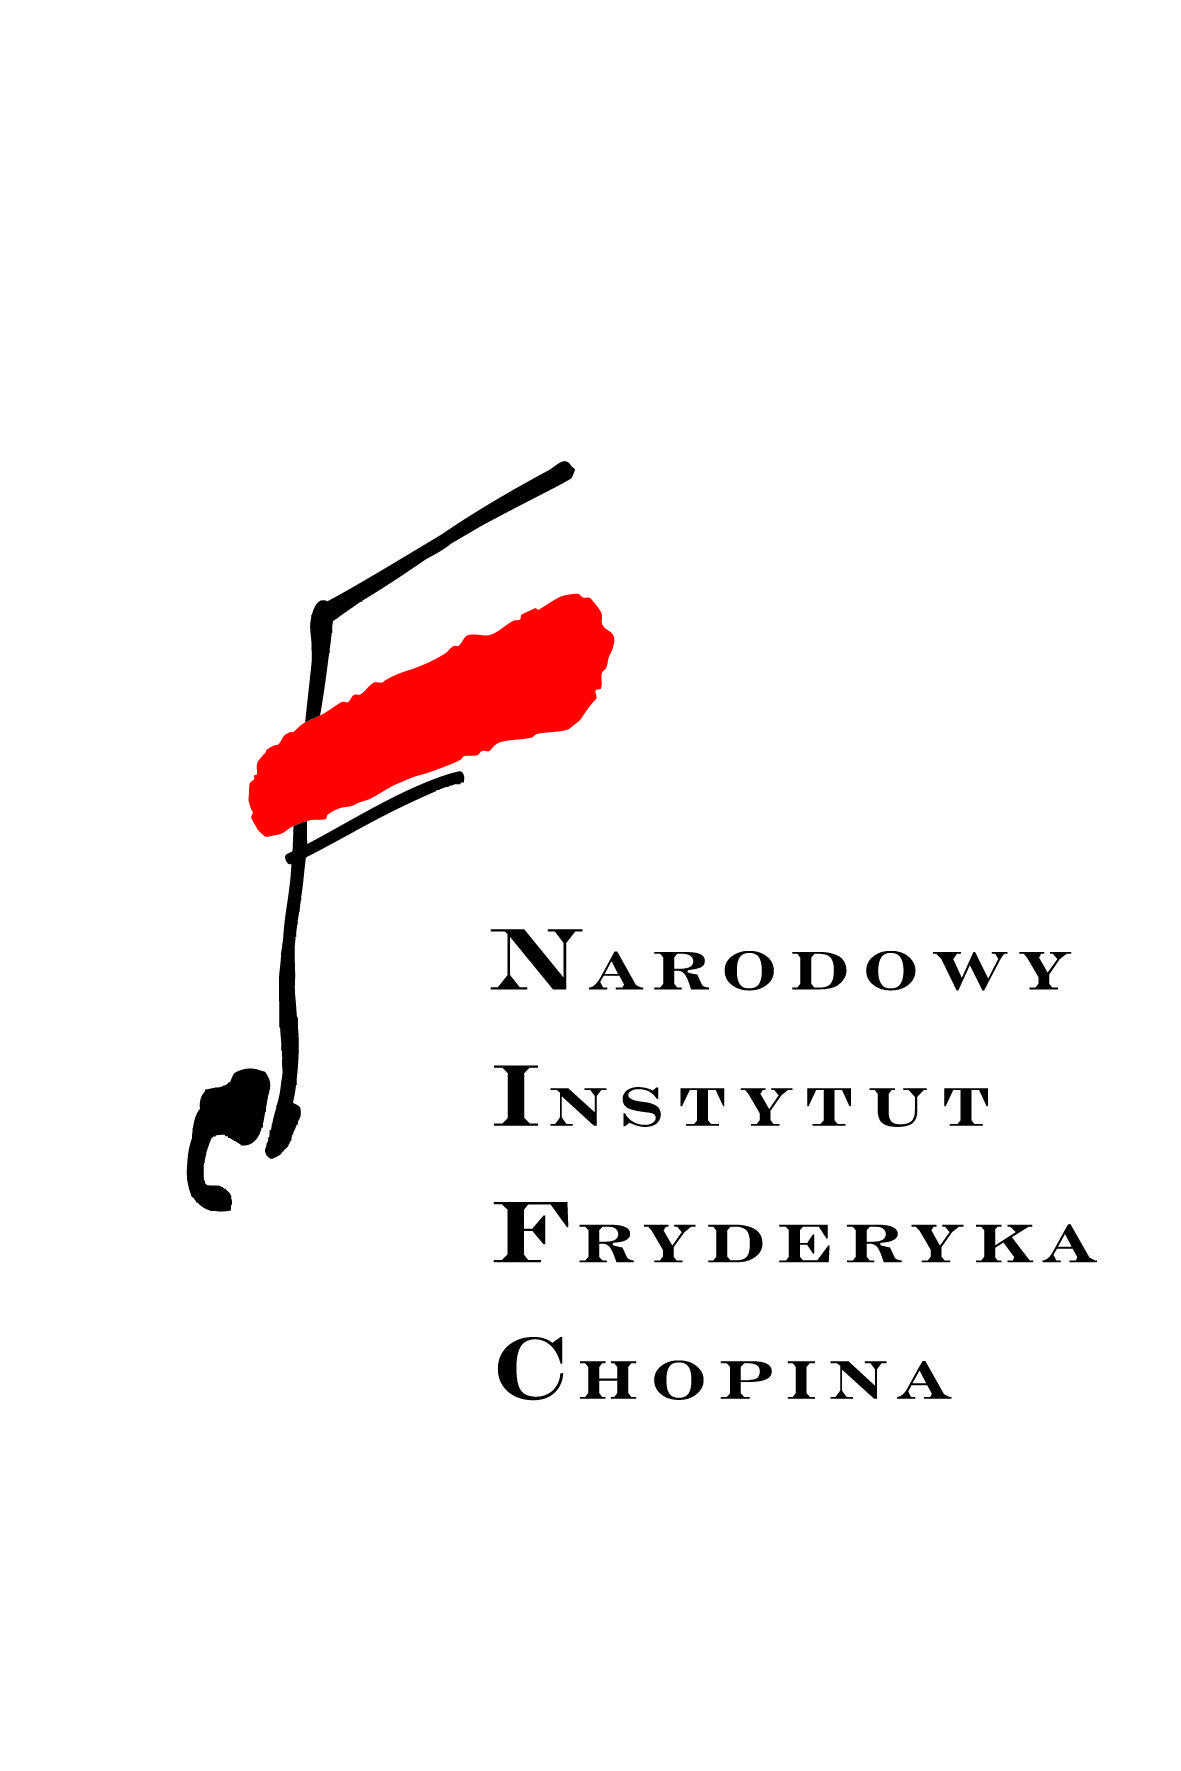 Nifc Logo - Fryderyk Chopin Konkursieły do pobrania